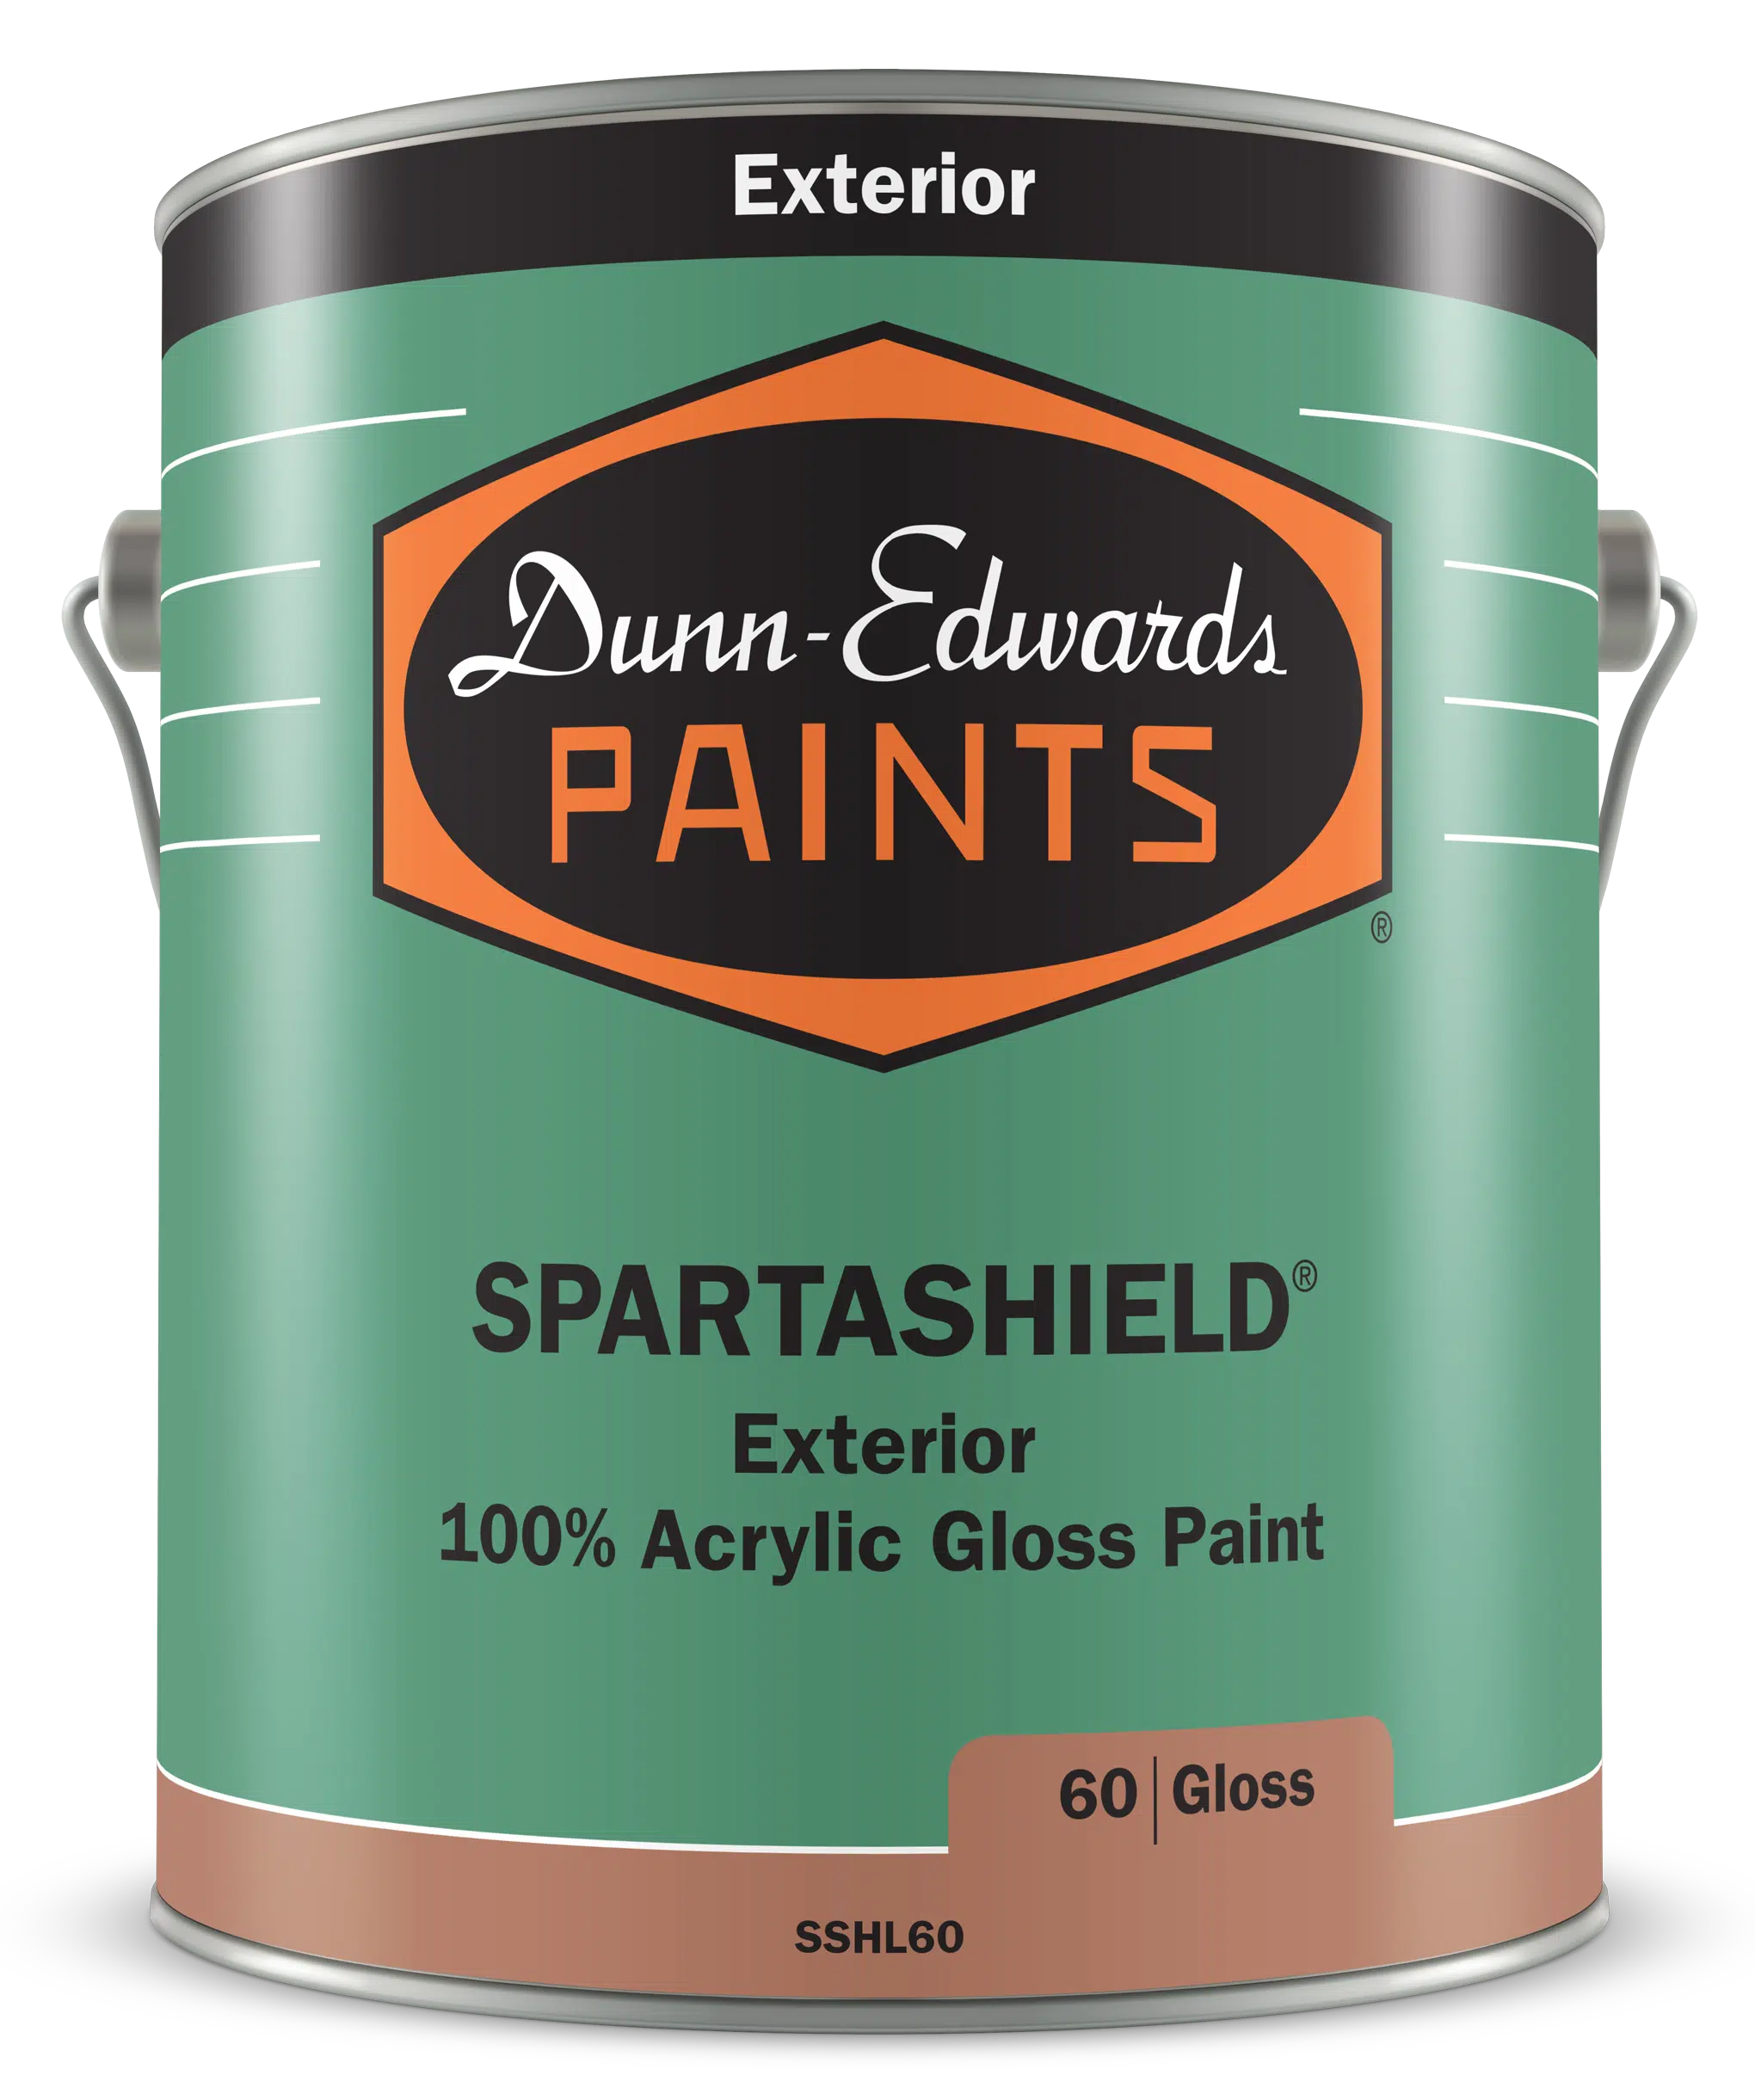 SPARTASHIELD Exterior 100% Acrylic Gloss Paint Can